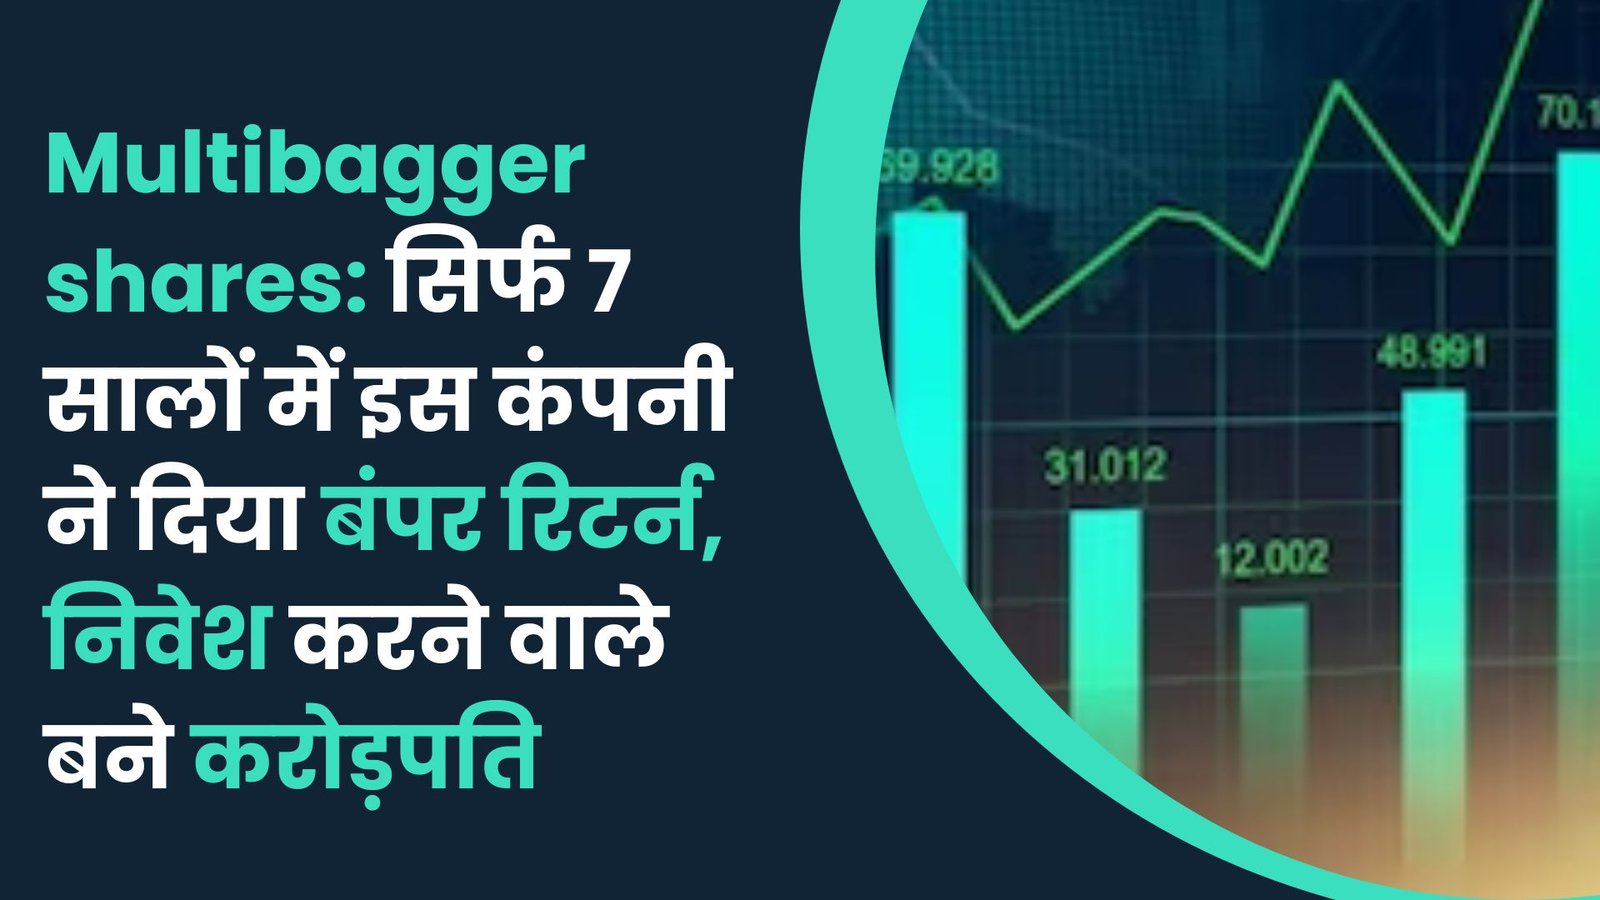 Multibagger shares: सिर्फ 7 सालों में इस कंपनी ने दिया बंपर रिटर्न, निवेश करने वाले बने करोड़पति